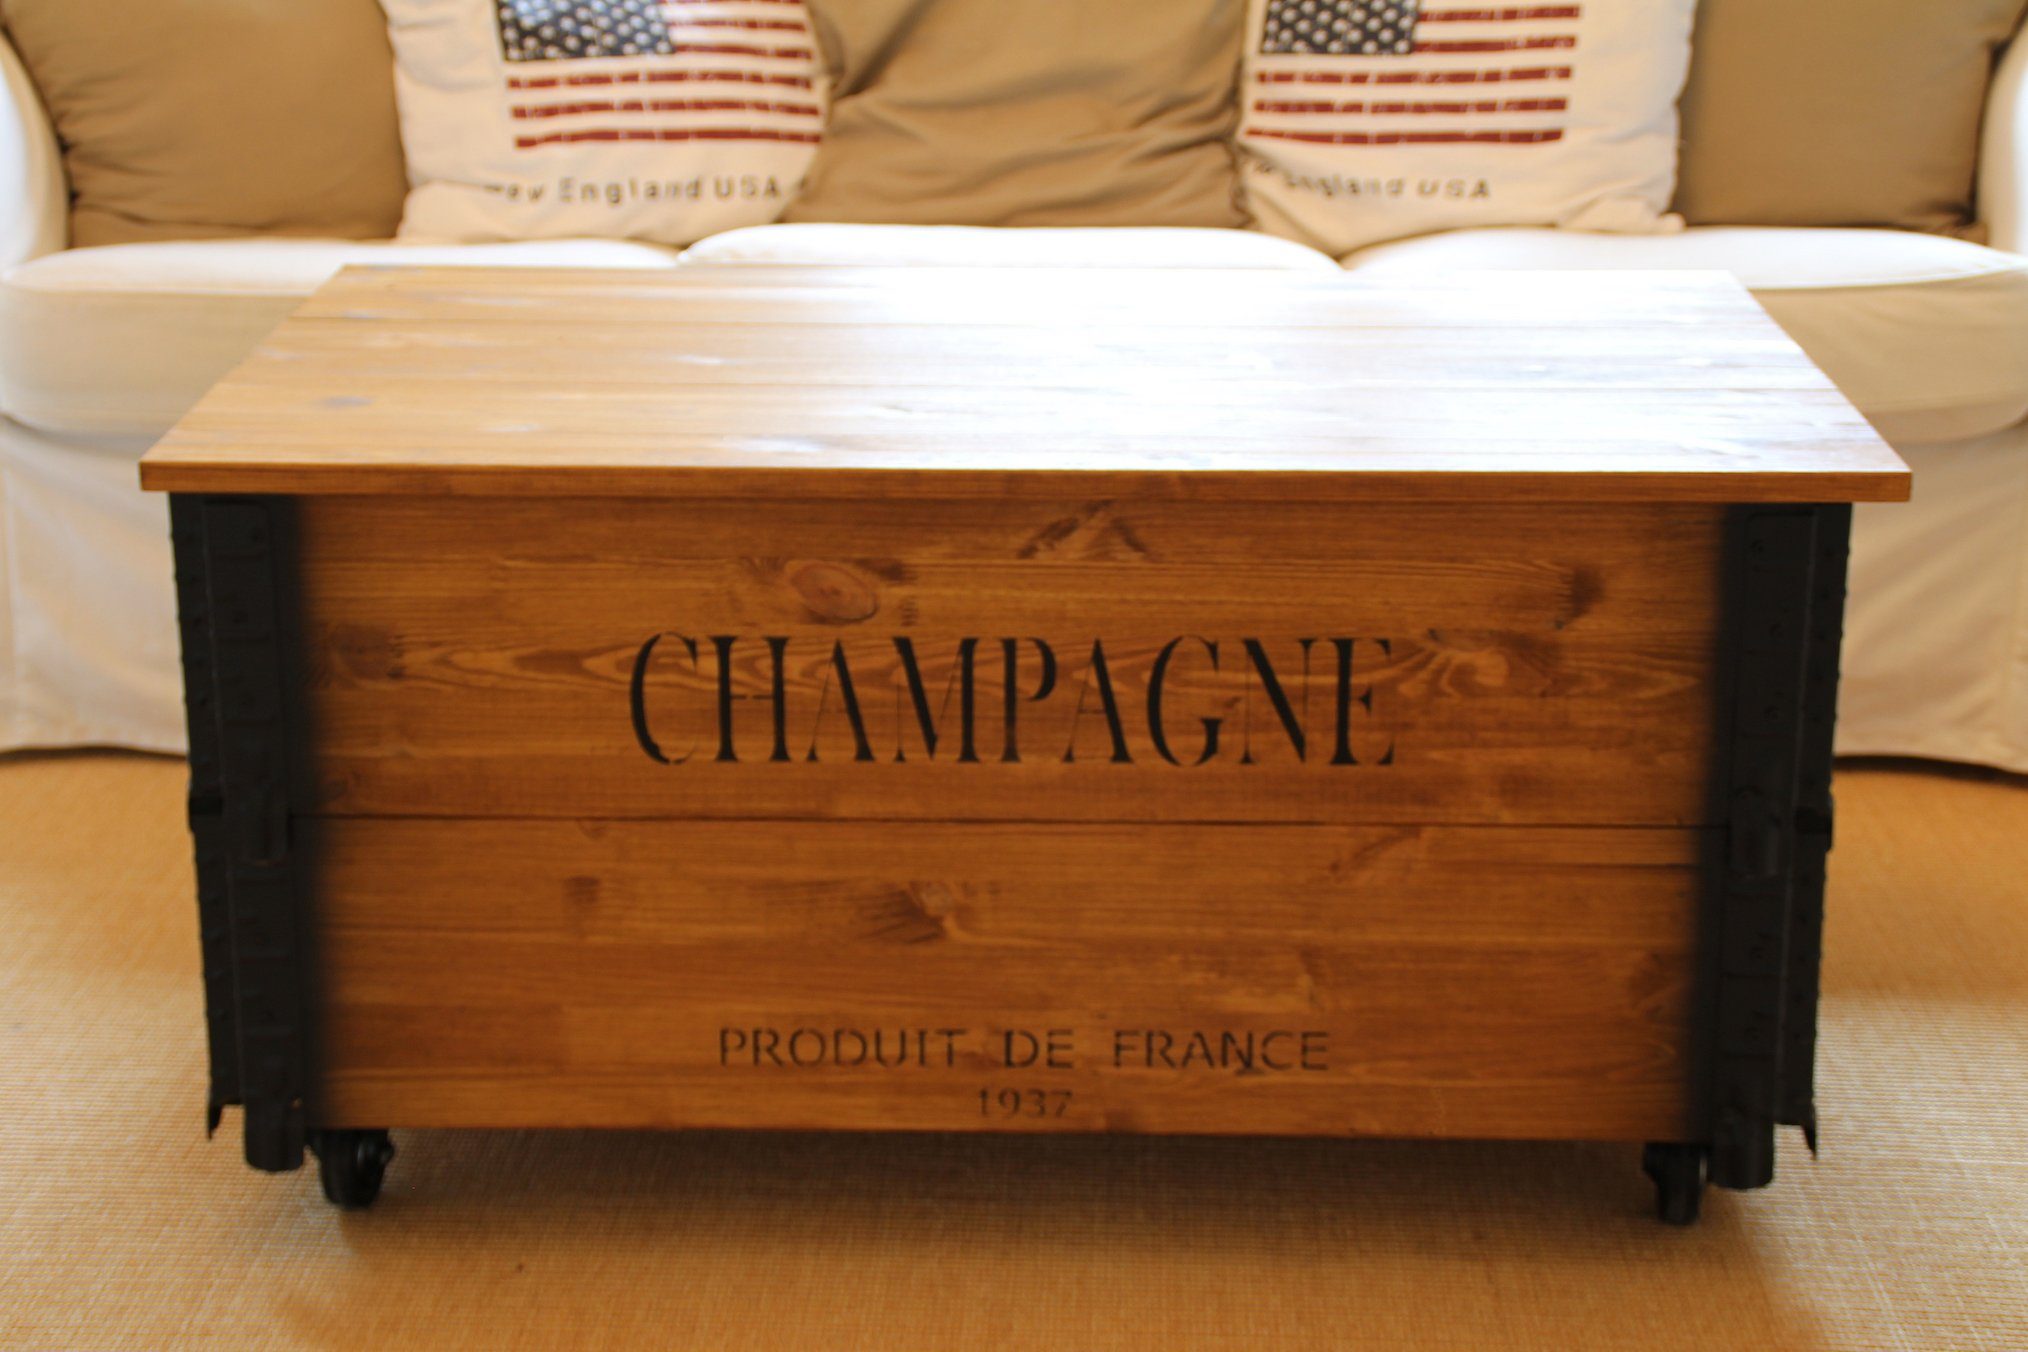 Couchtisch XL im Truhen-Design Champagne, Uncle Joe´s